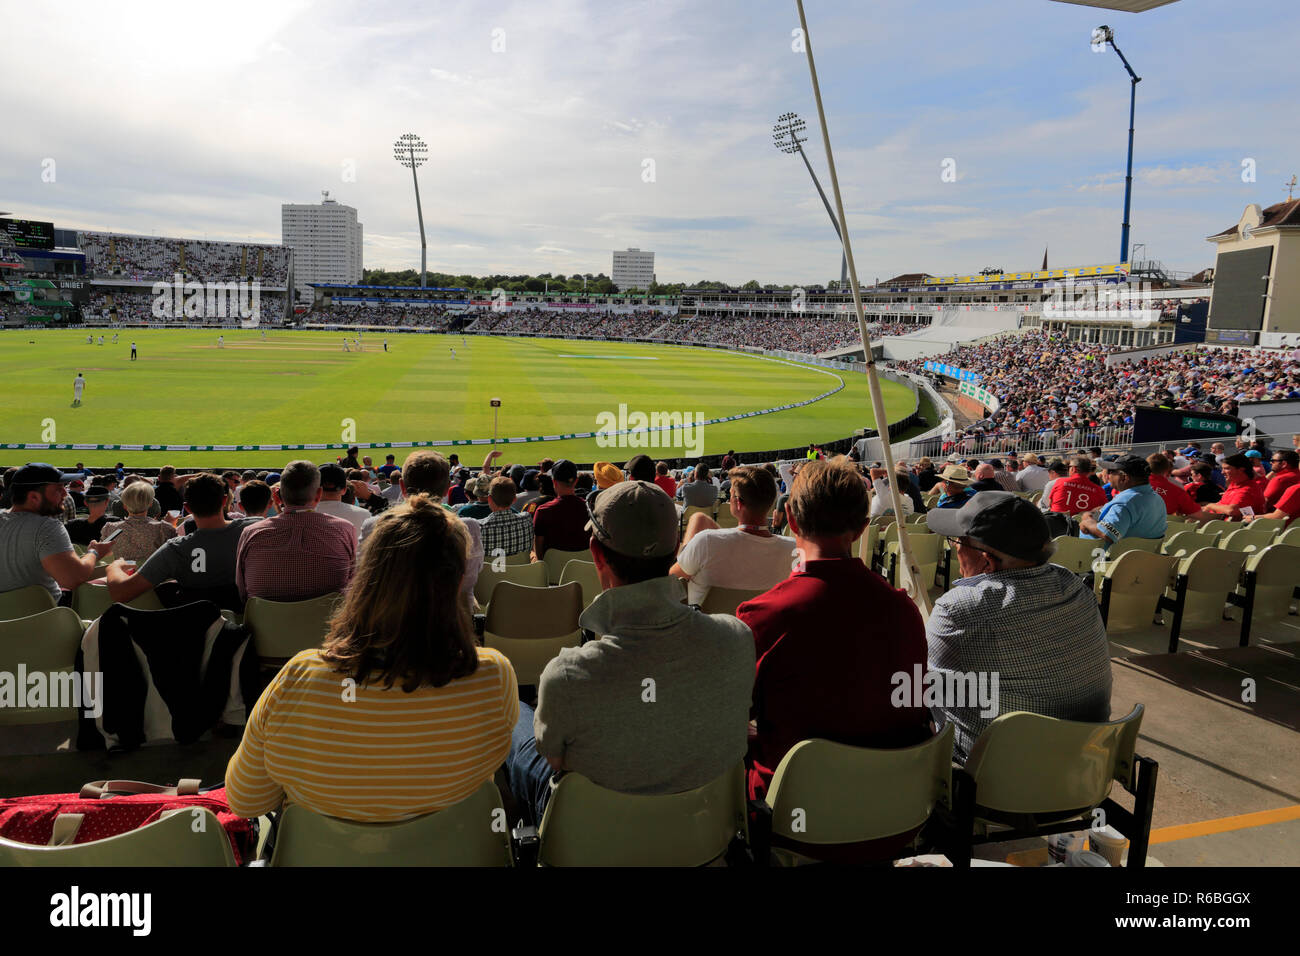 Test match avec l'Inde, les équipes de cricket Angleterre versets à Edgbaston, Birmingham, West Midlands, England, UK Banque D'Images